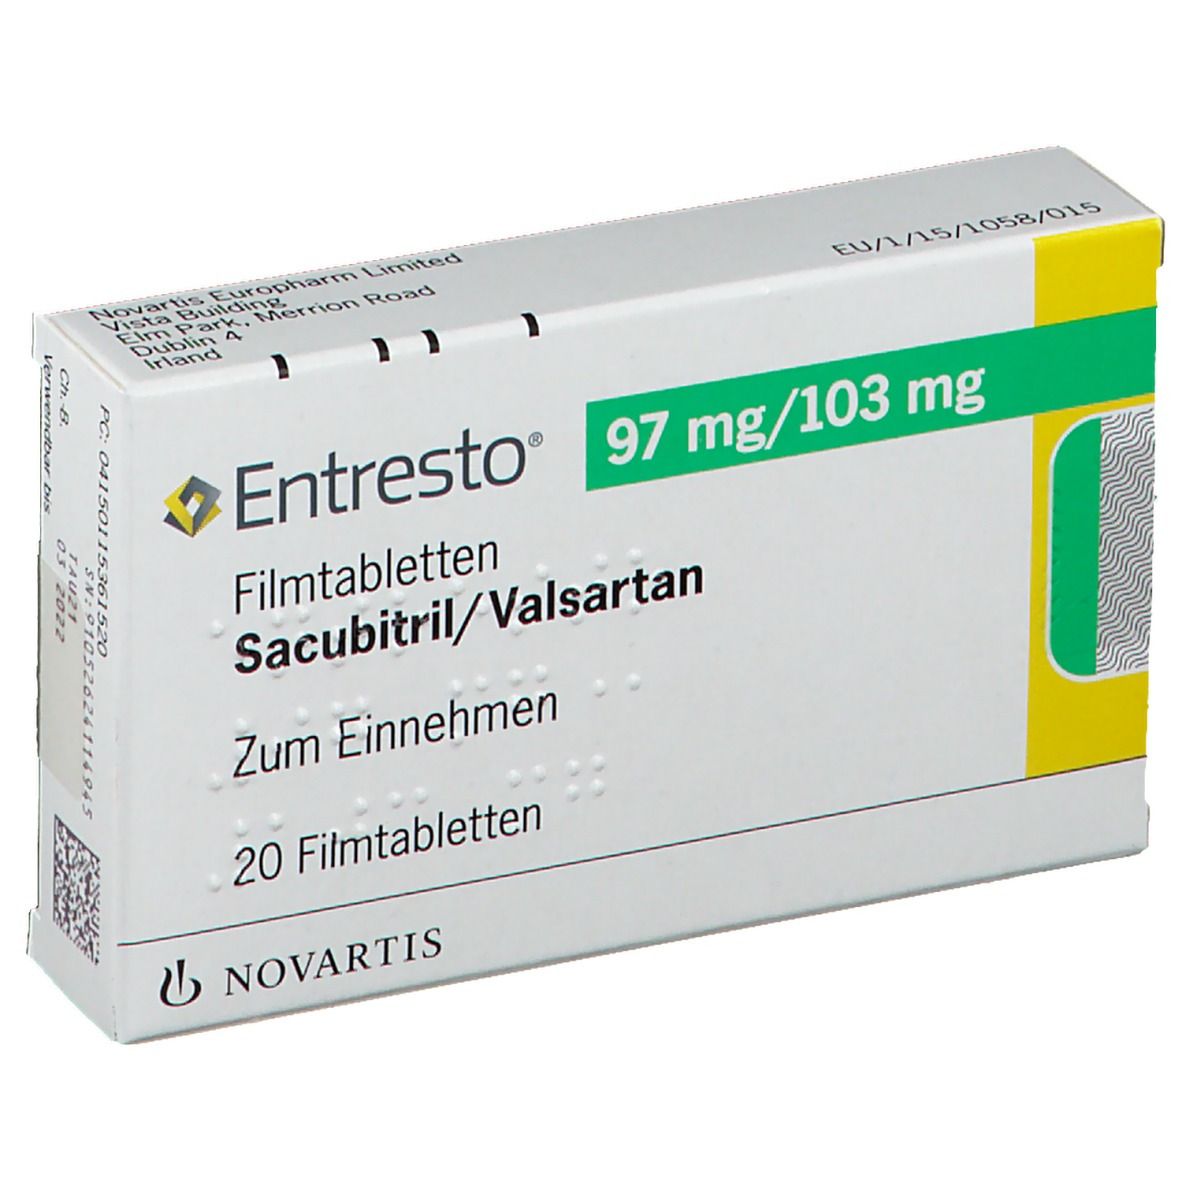 Entresto® 97 mg/103 mg